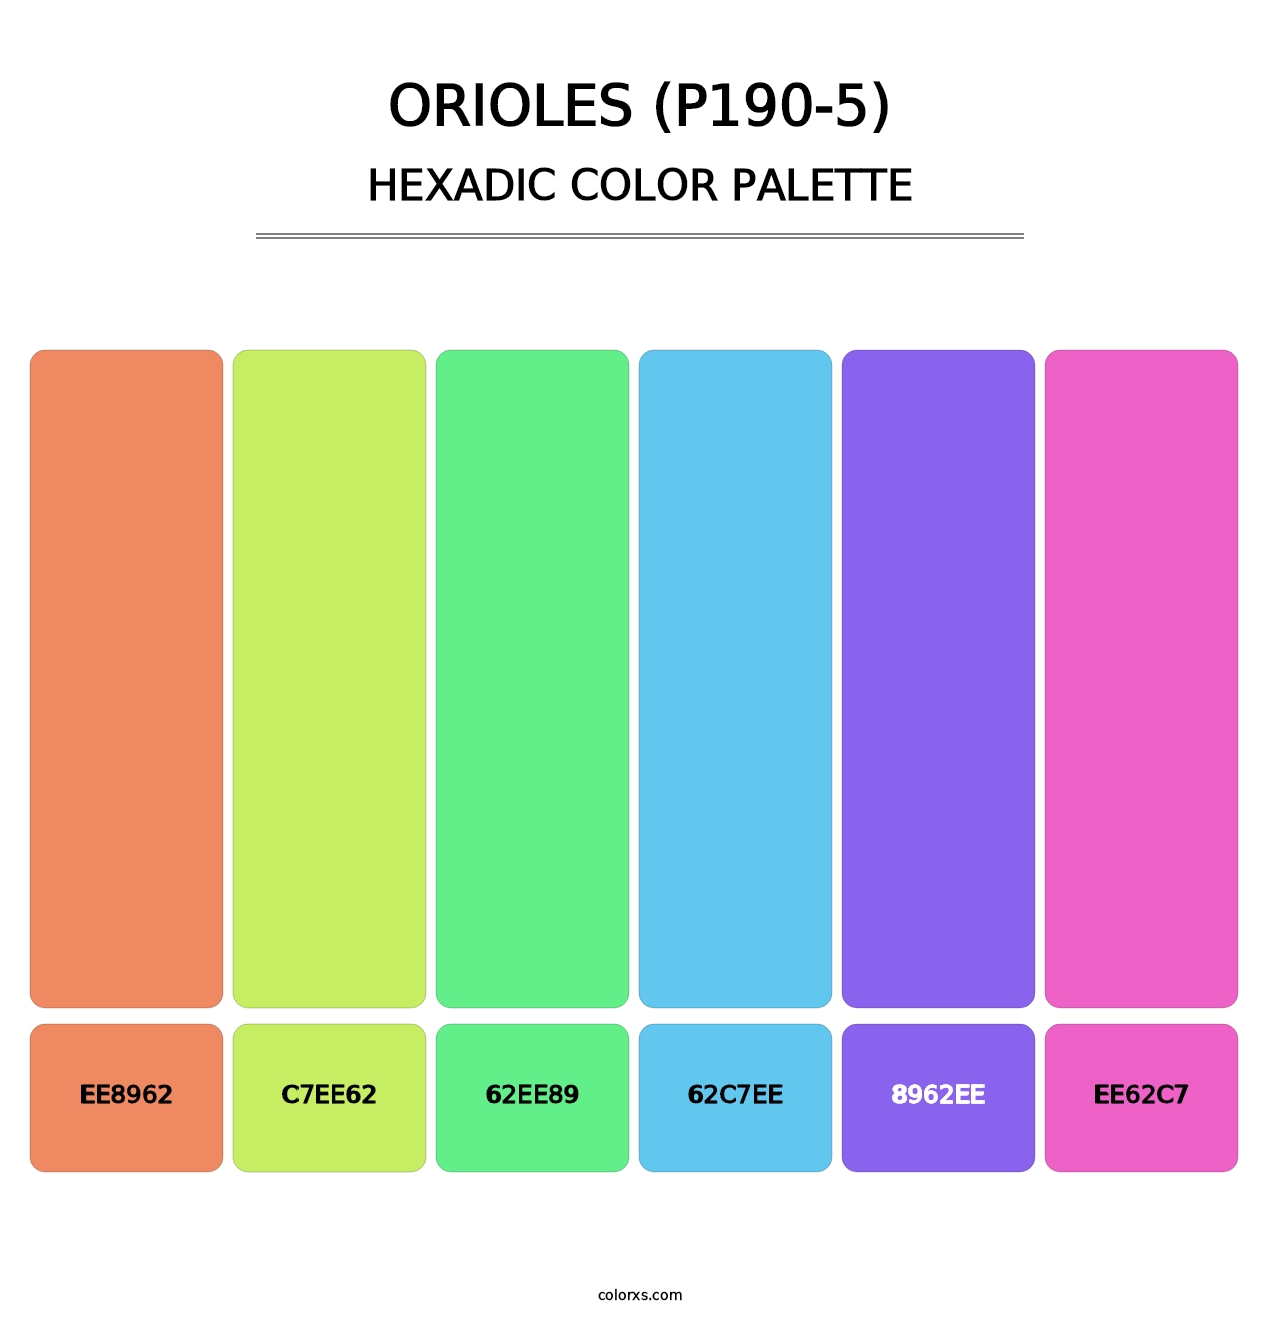 Orioles (P190-5) - Hexadic Color Palette